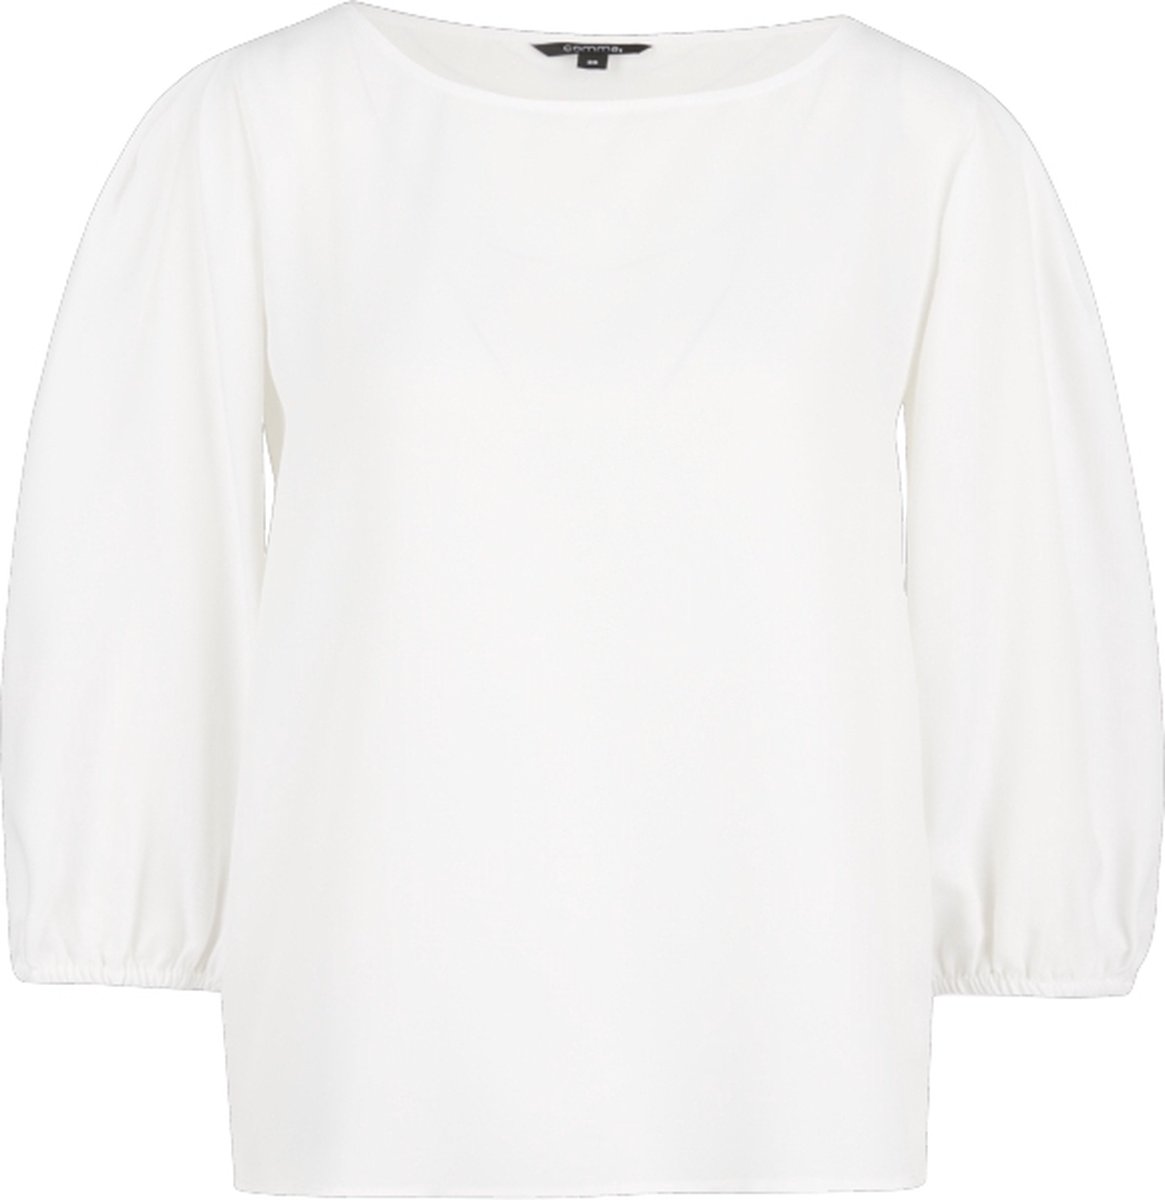 Witte blouse met driekwart mouw - Comma - Maat 40